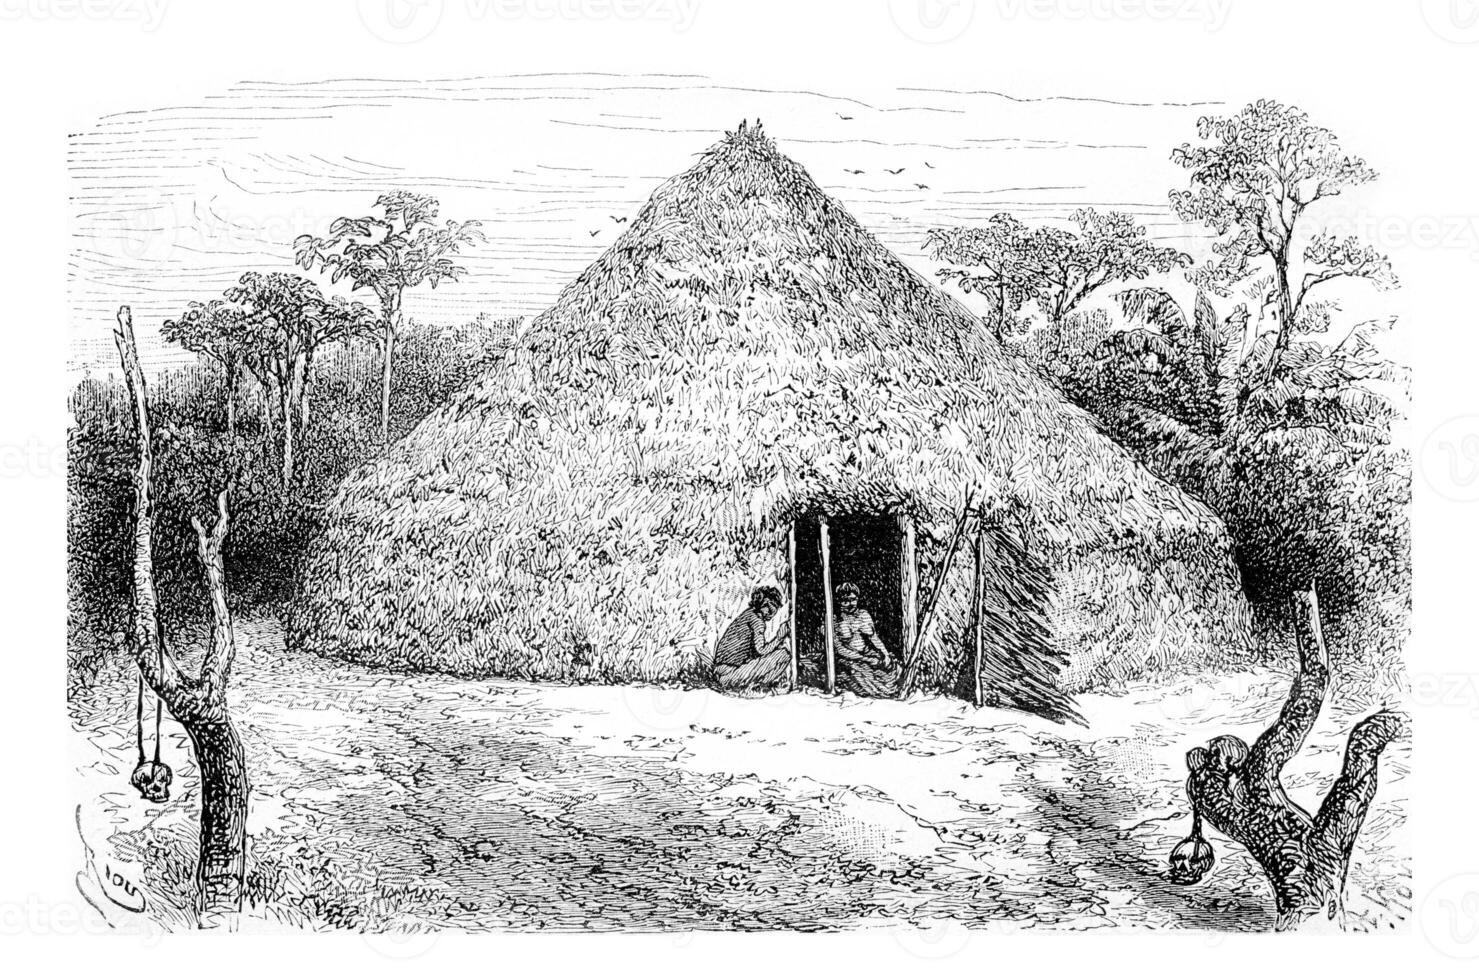 habitations de le orejone Indiens dans amazones, Brésil, ancien gravure photo